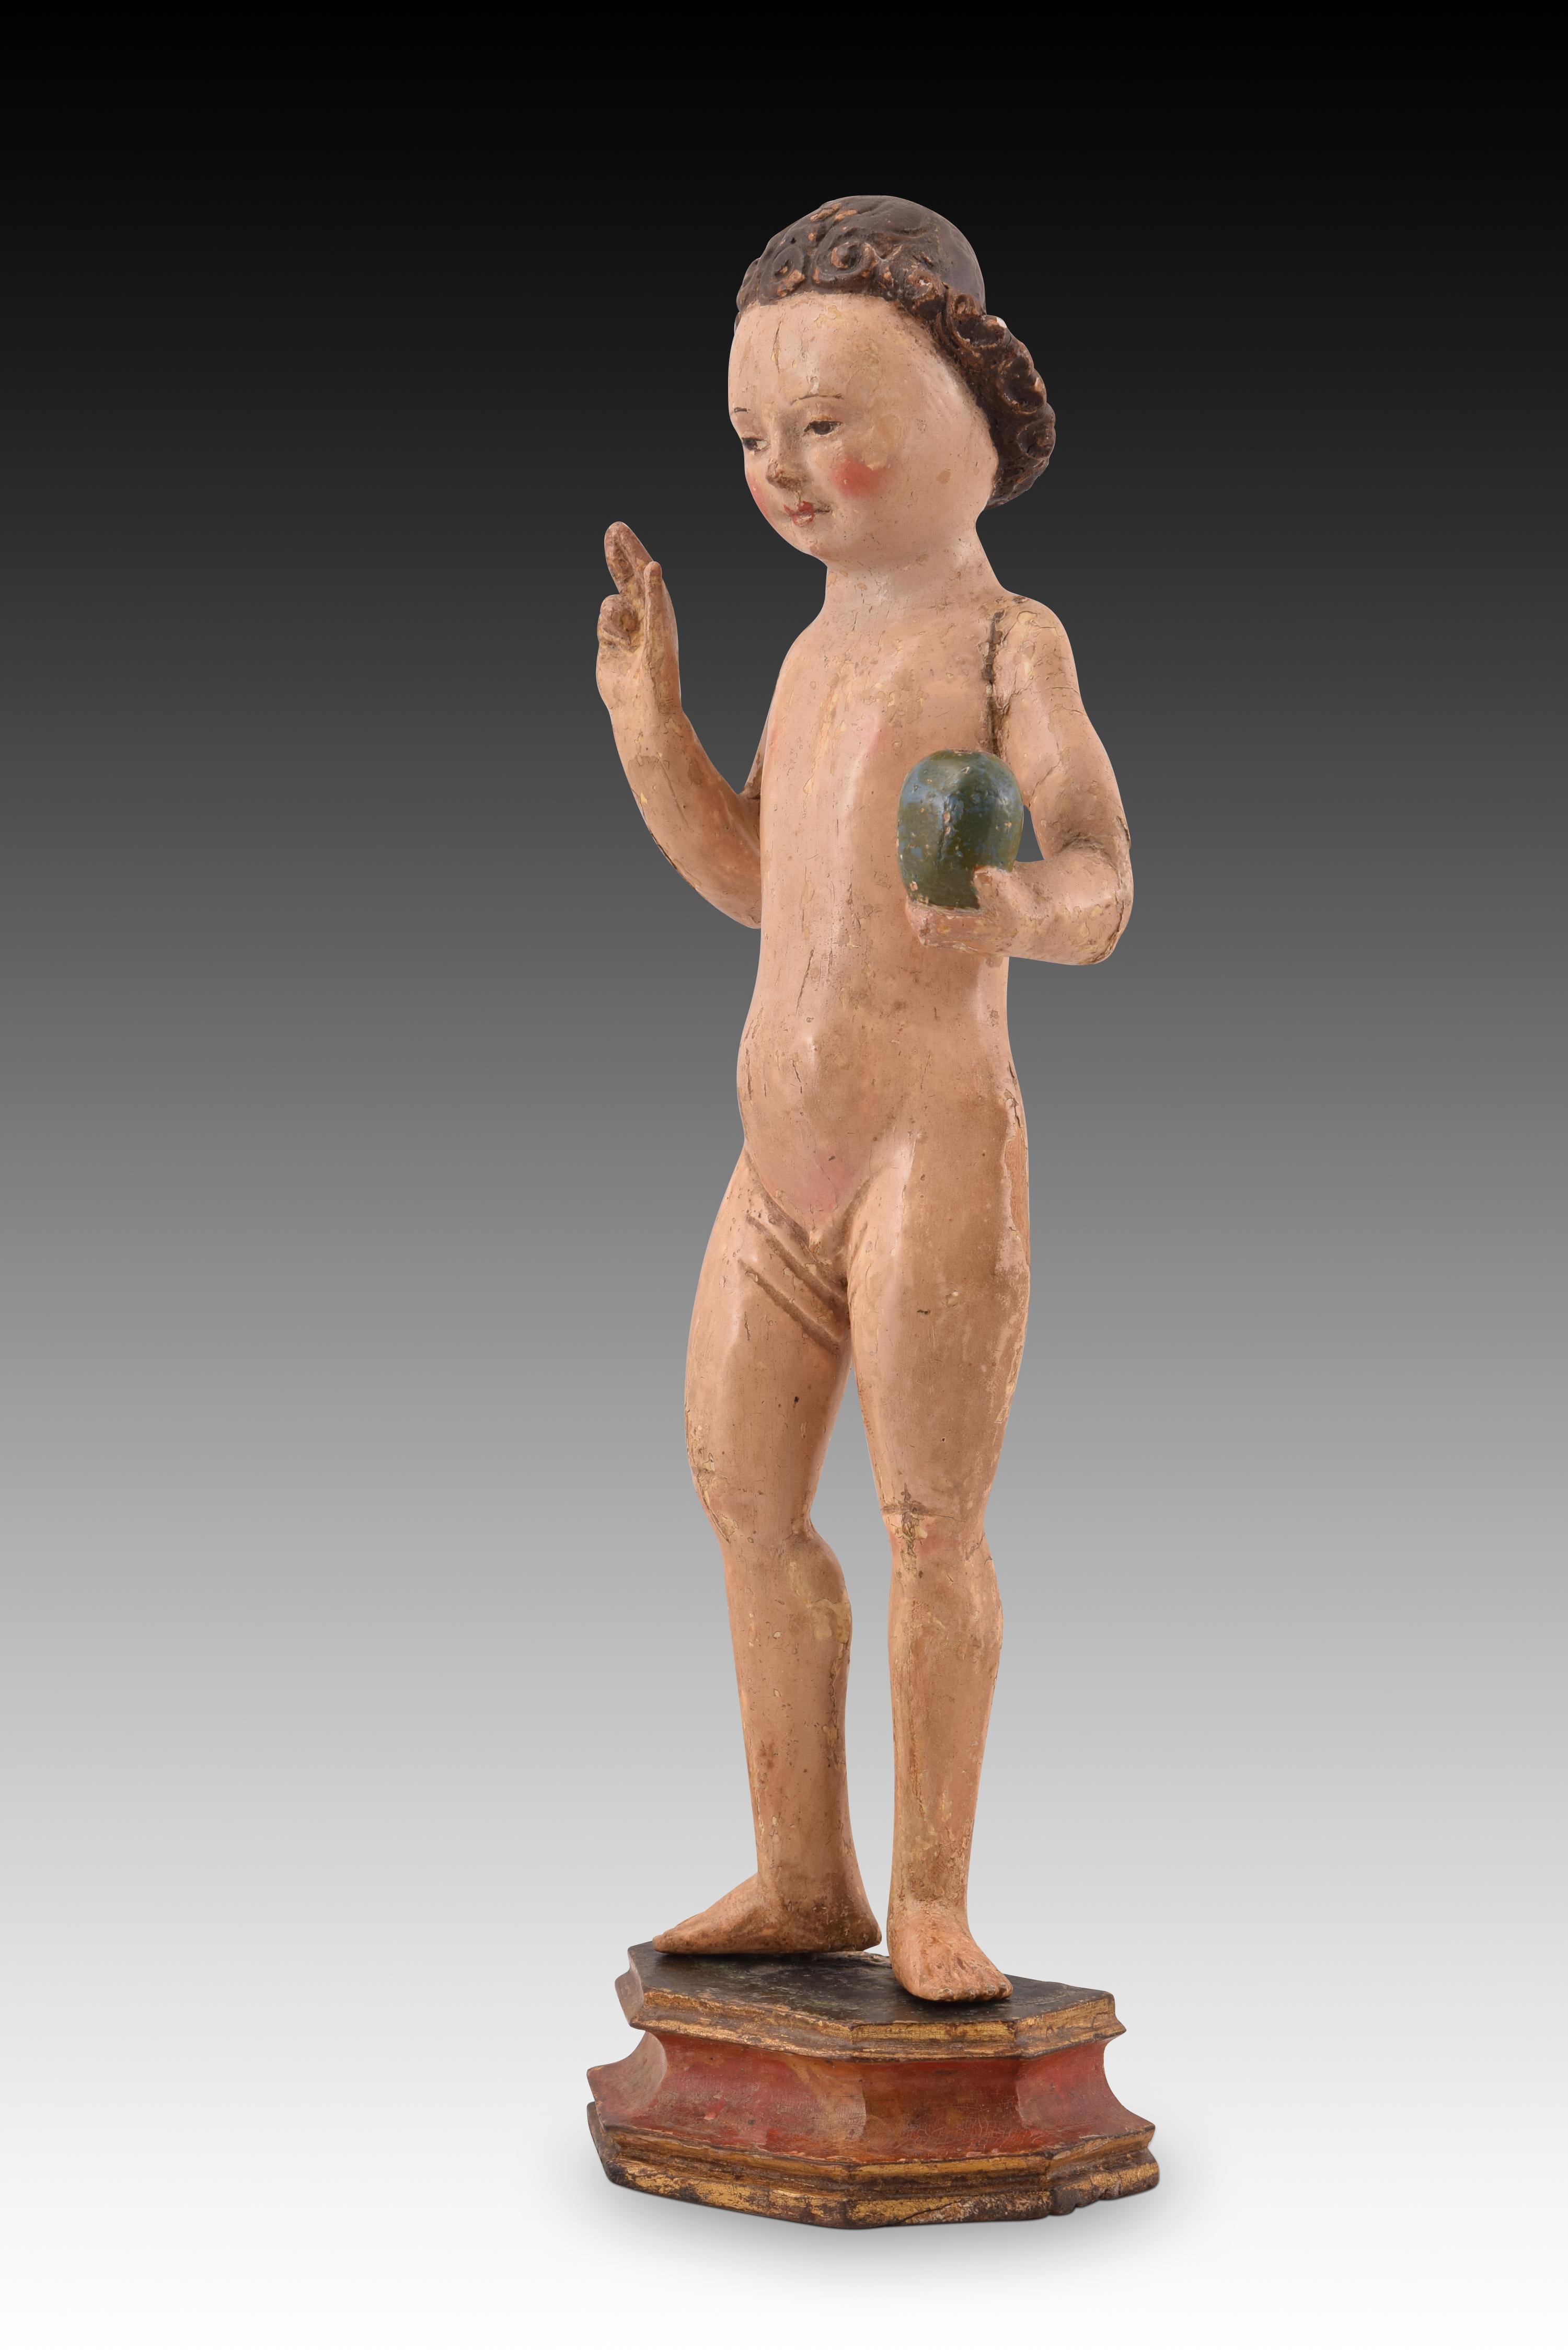 Child & Child. Bois sculpté et polychrome. École flamande, vers la première moitié du XVIe siècle. 
Enfant Jésus avec base polygonale en bois sculpté et polychrome. Le personnage est présenté nu, debout, la main droite levée en signe de bénédiction